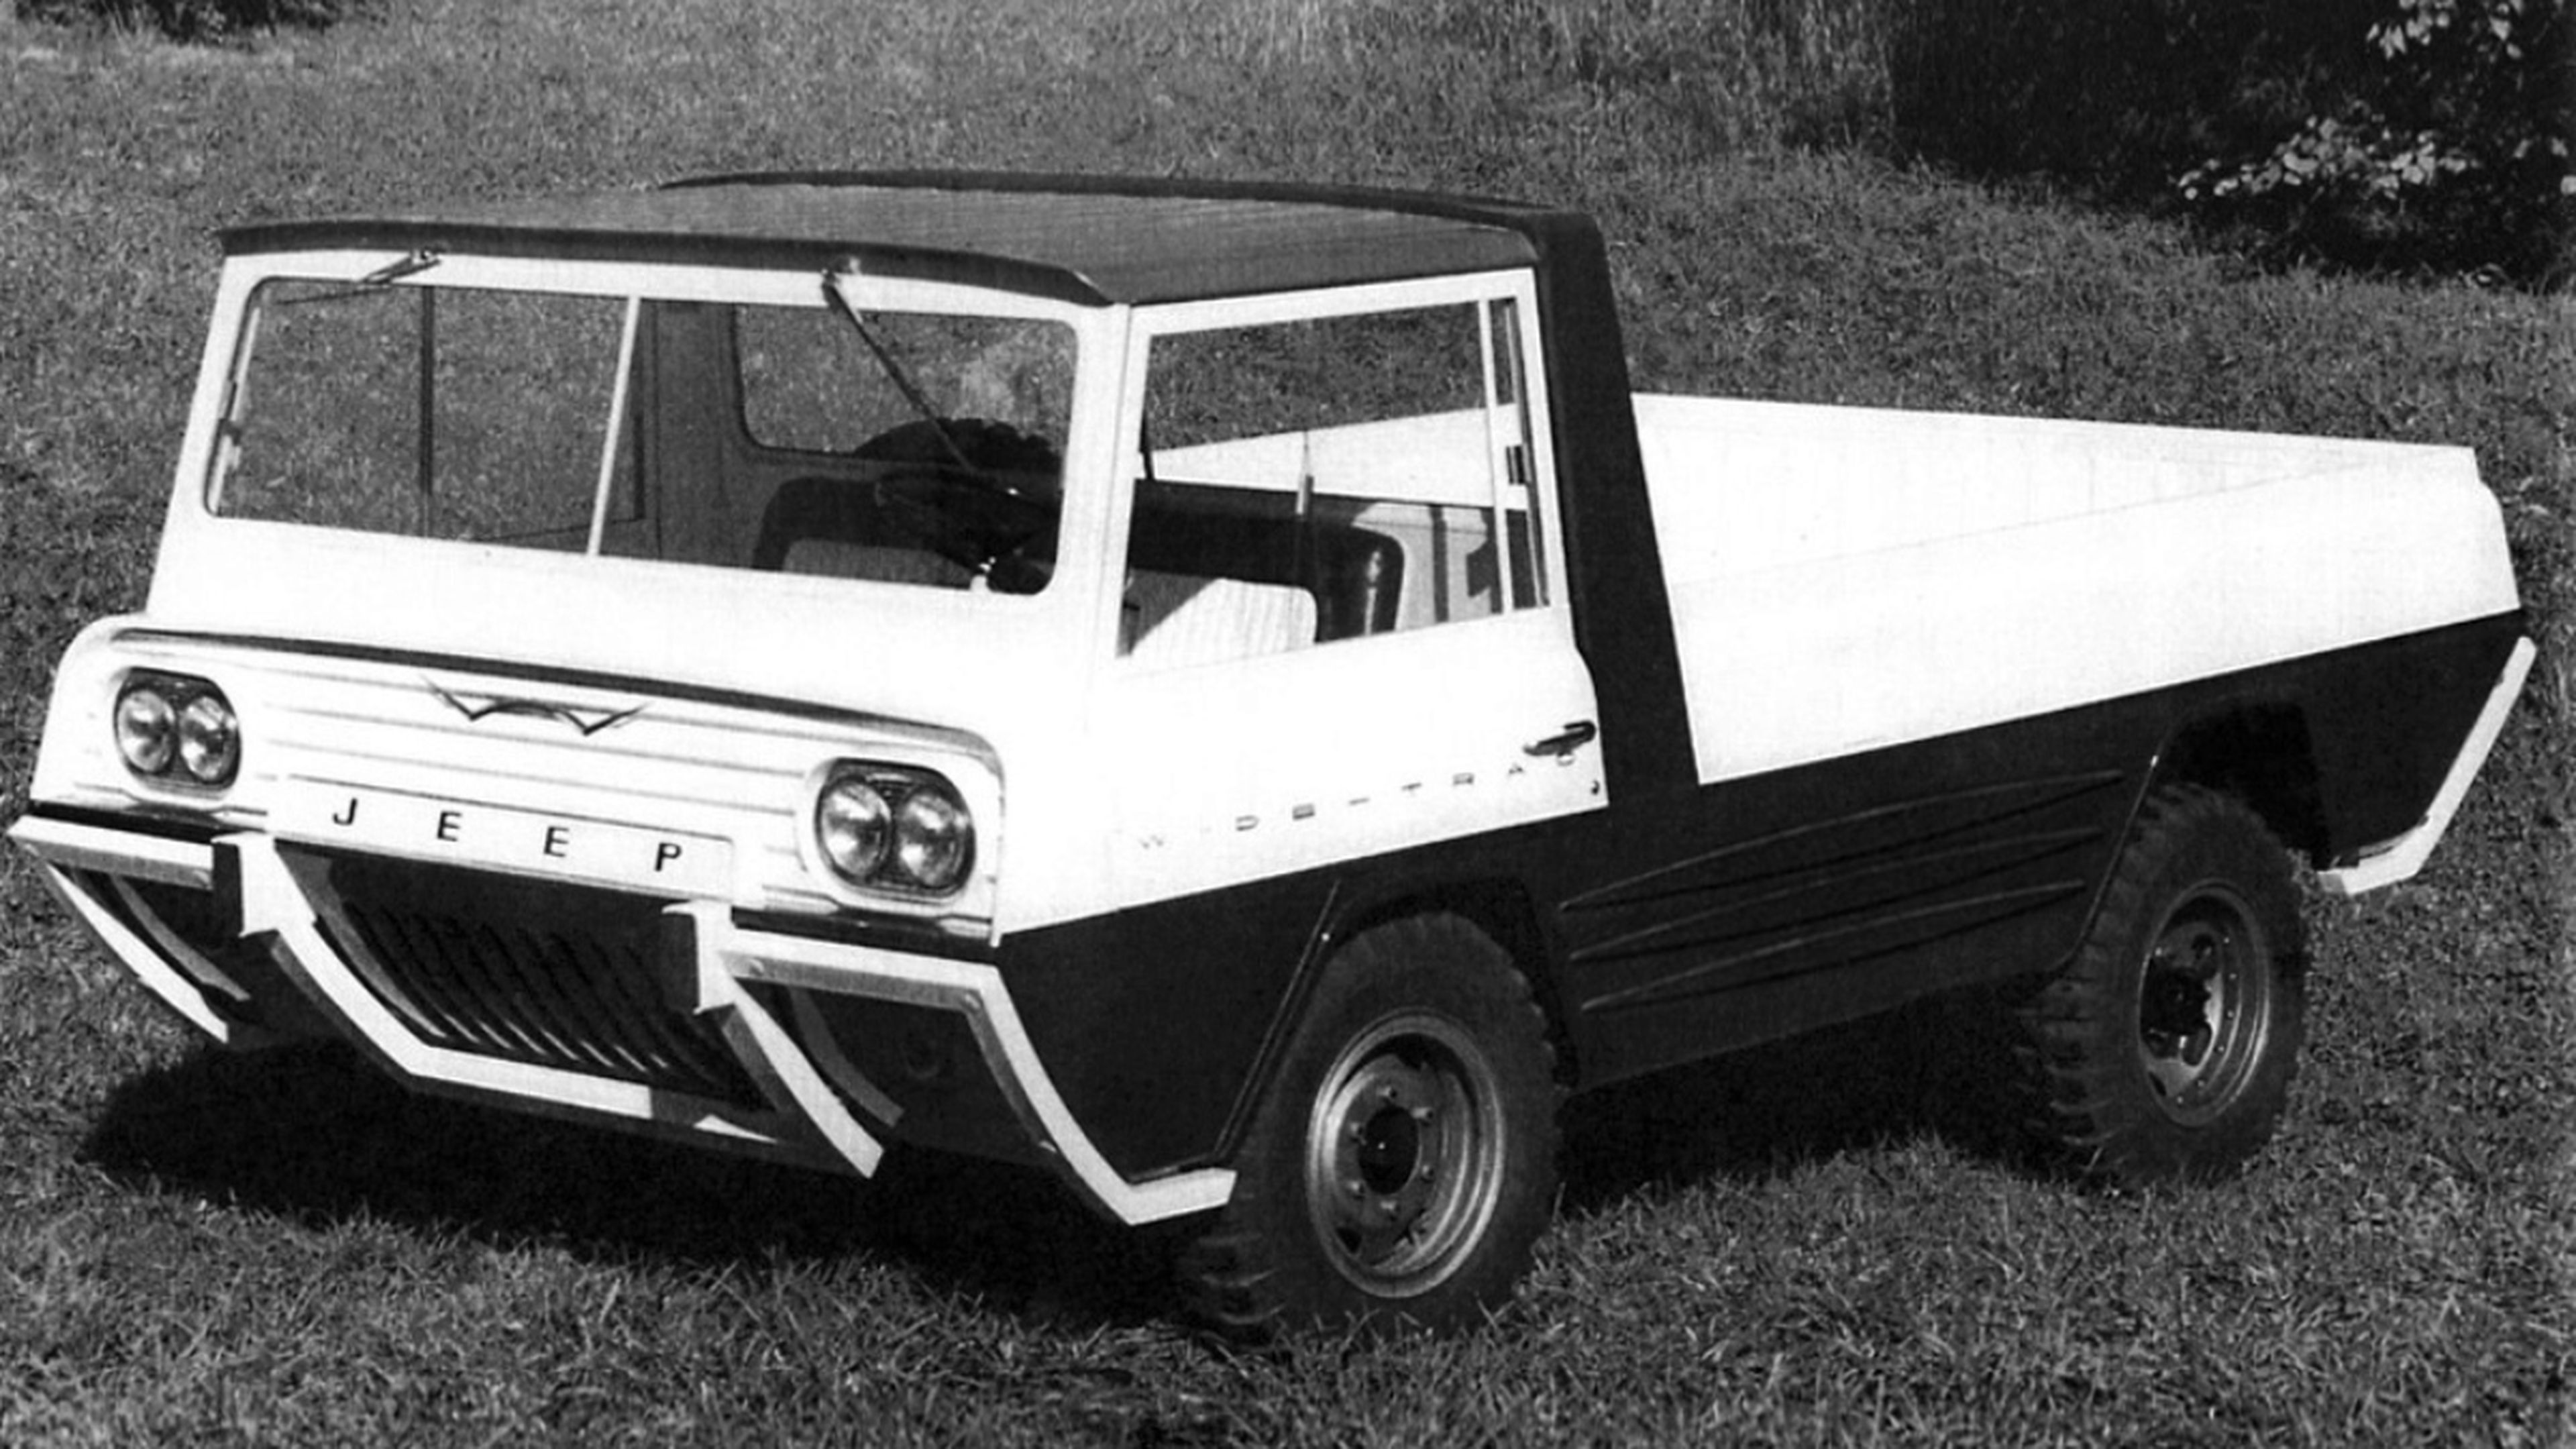 Cinco prototipos Jeep que no conocías